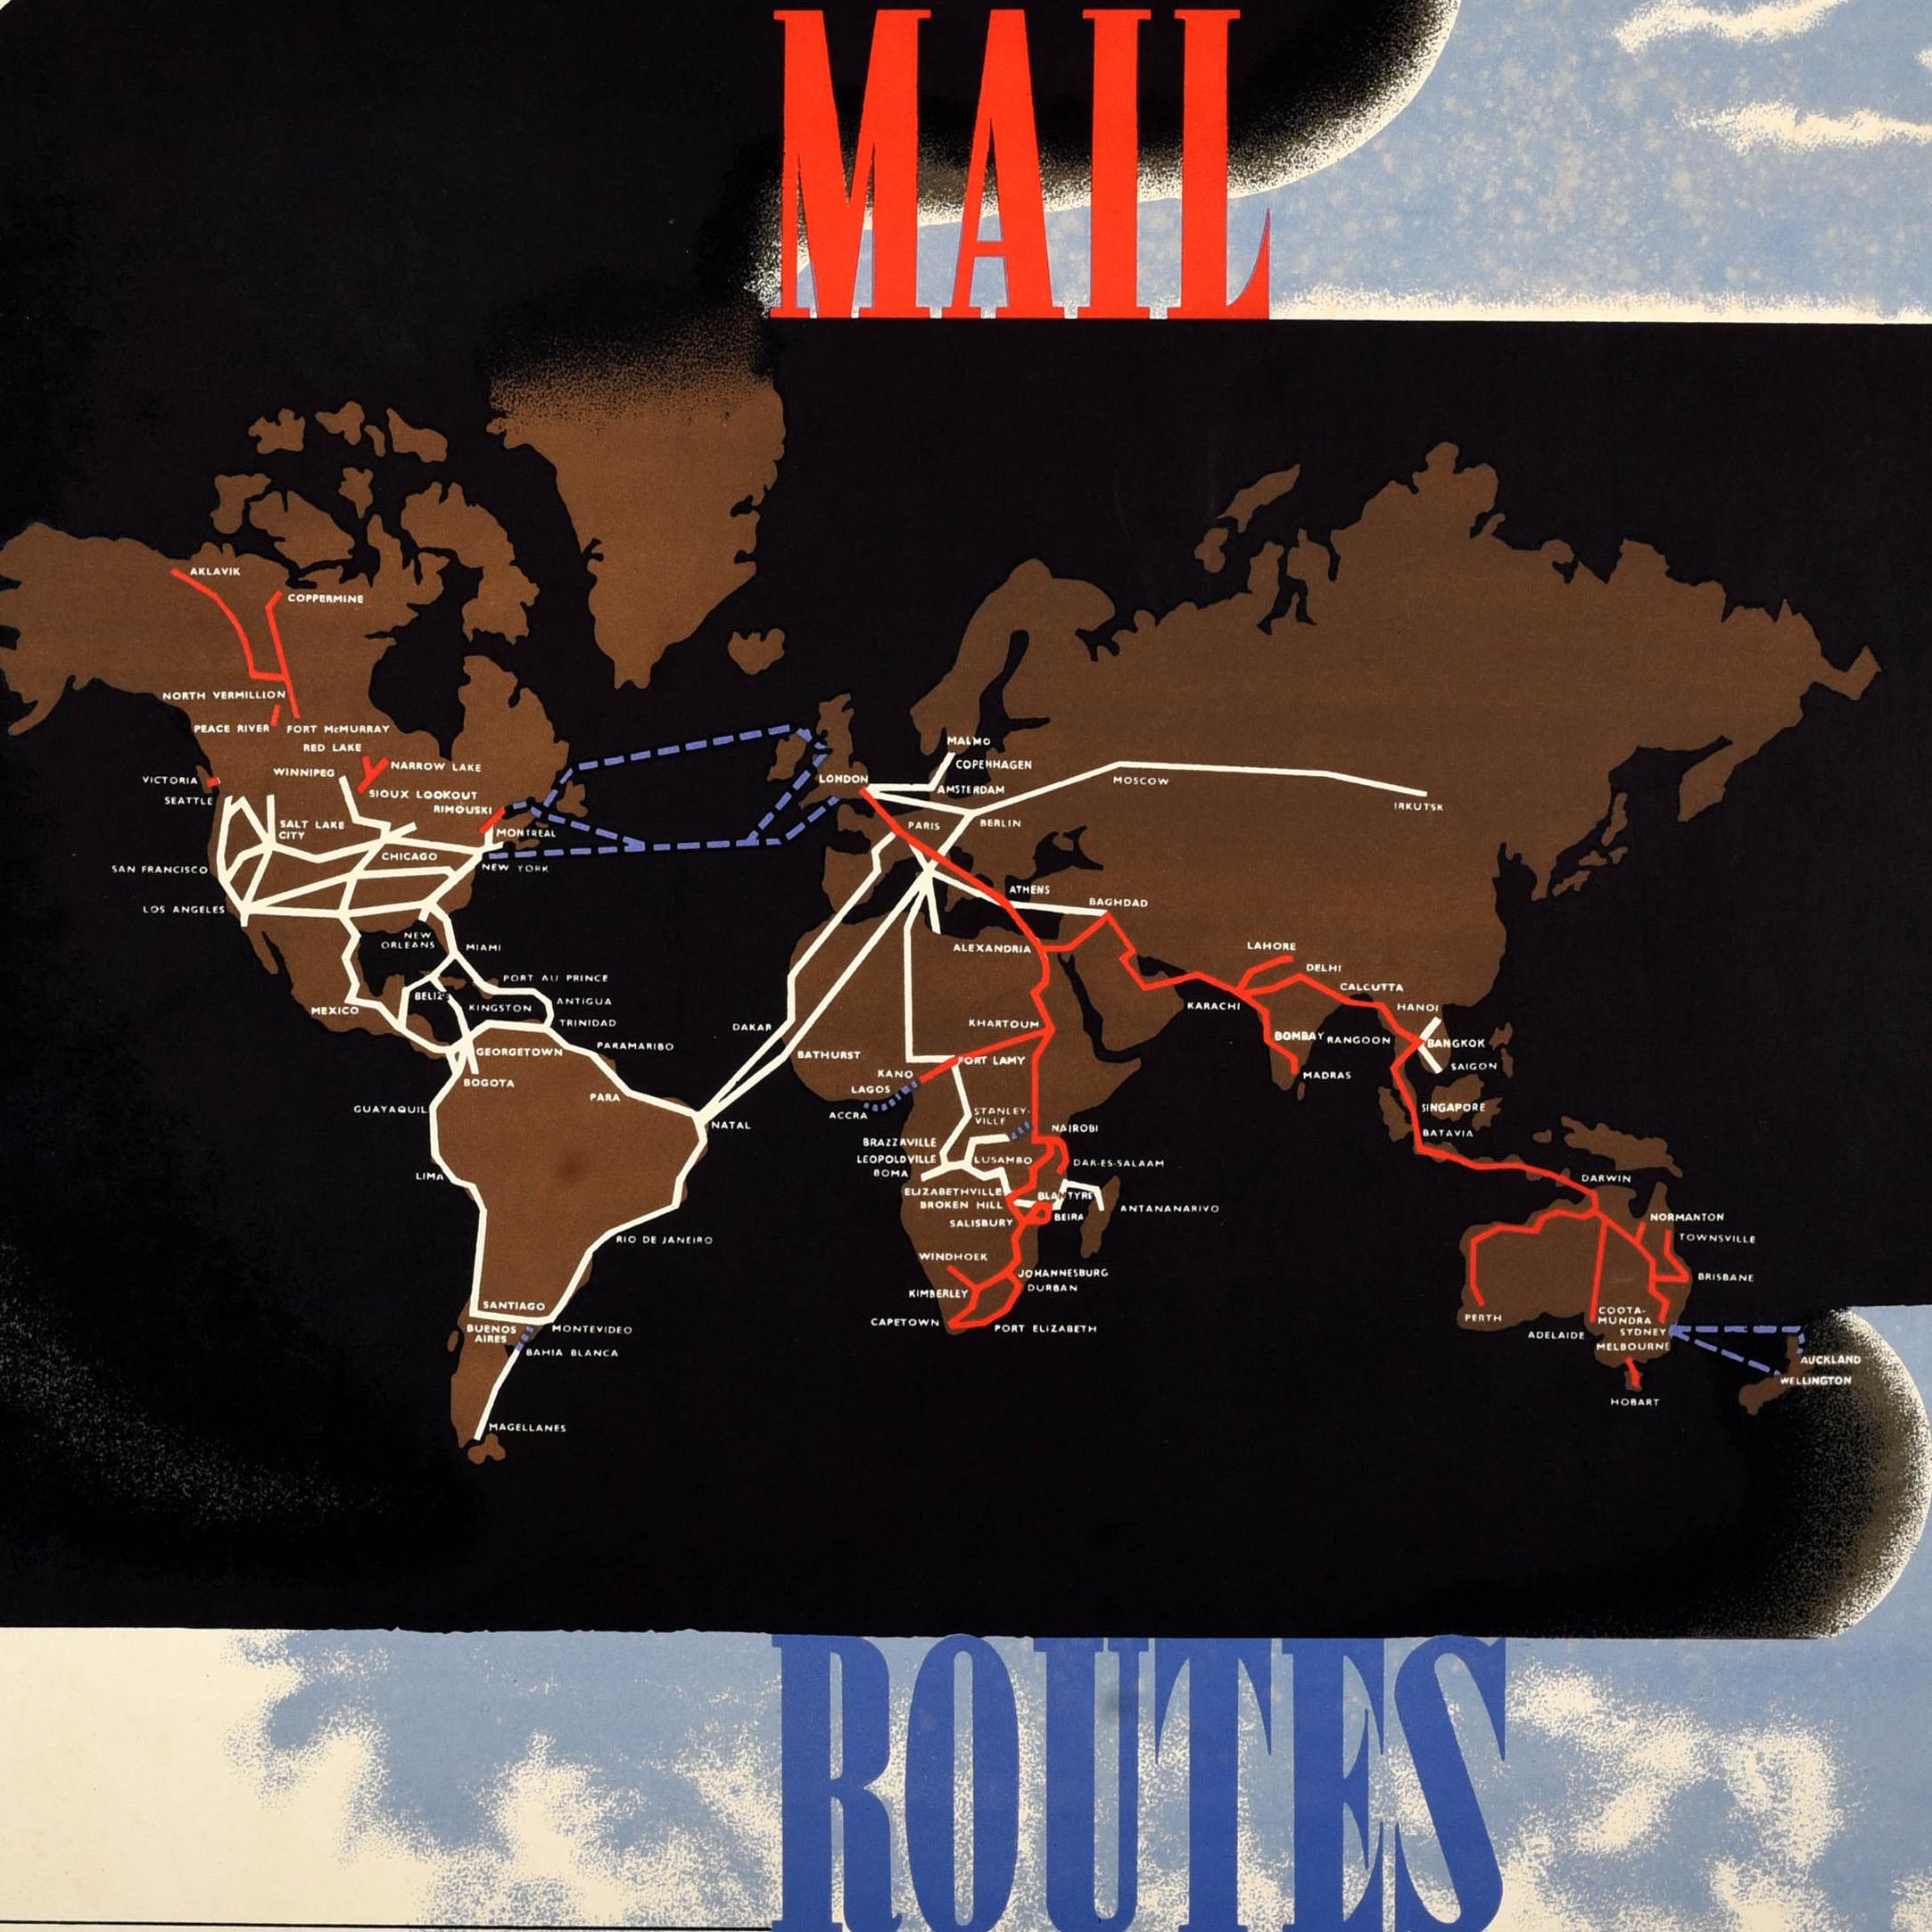 Seltenes Original-Werbeplakat für das GPO General Post Office - Air Mail Routes - mit einem großartigen Entwurf des bekannten Künstlers Edward McKnight Kauffer (1890-1954), der die weltweiten Luftpostrouten in den Farben Rot, Weiß und Blau zeigt,